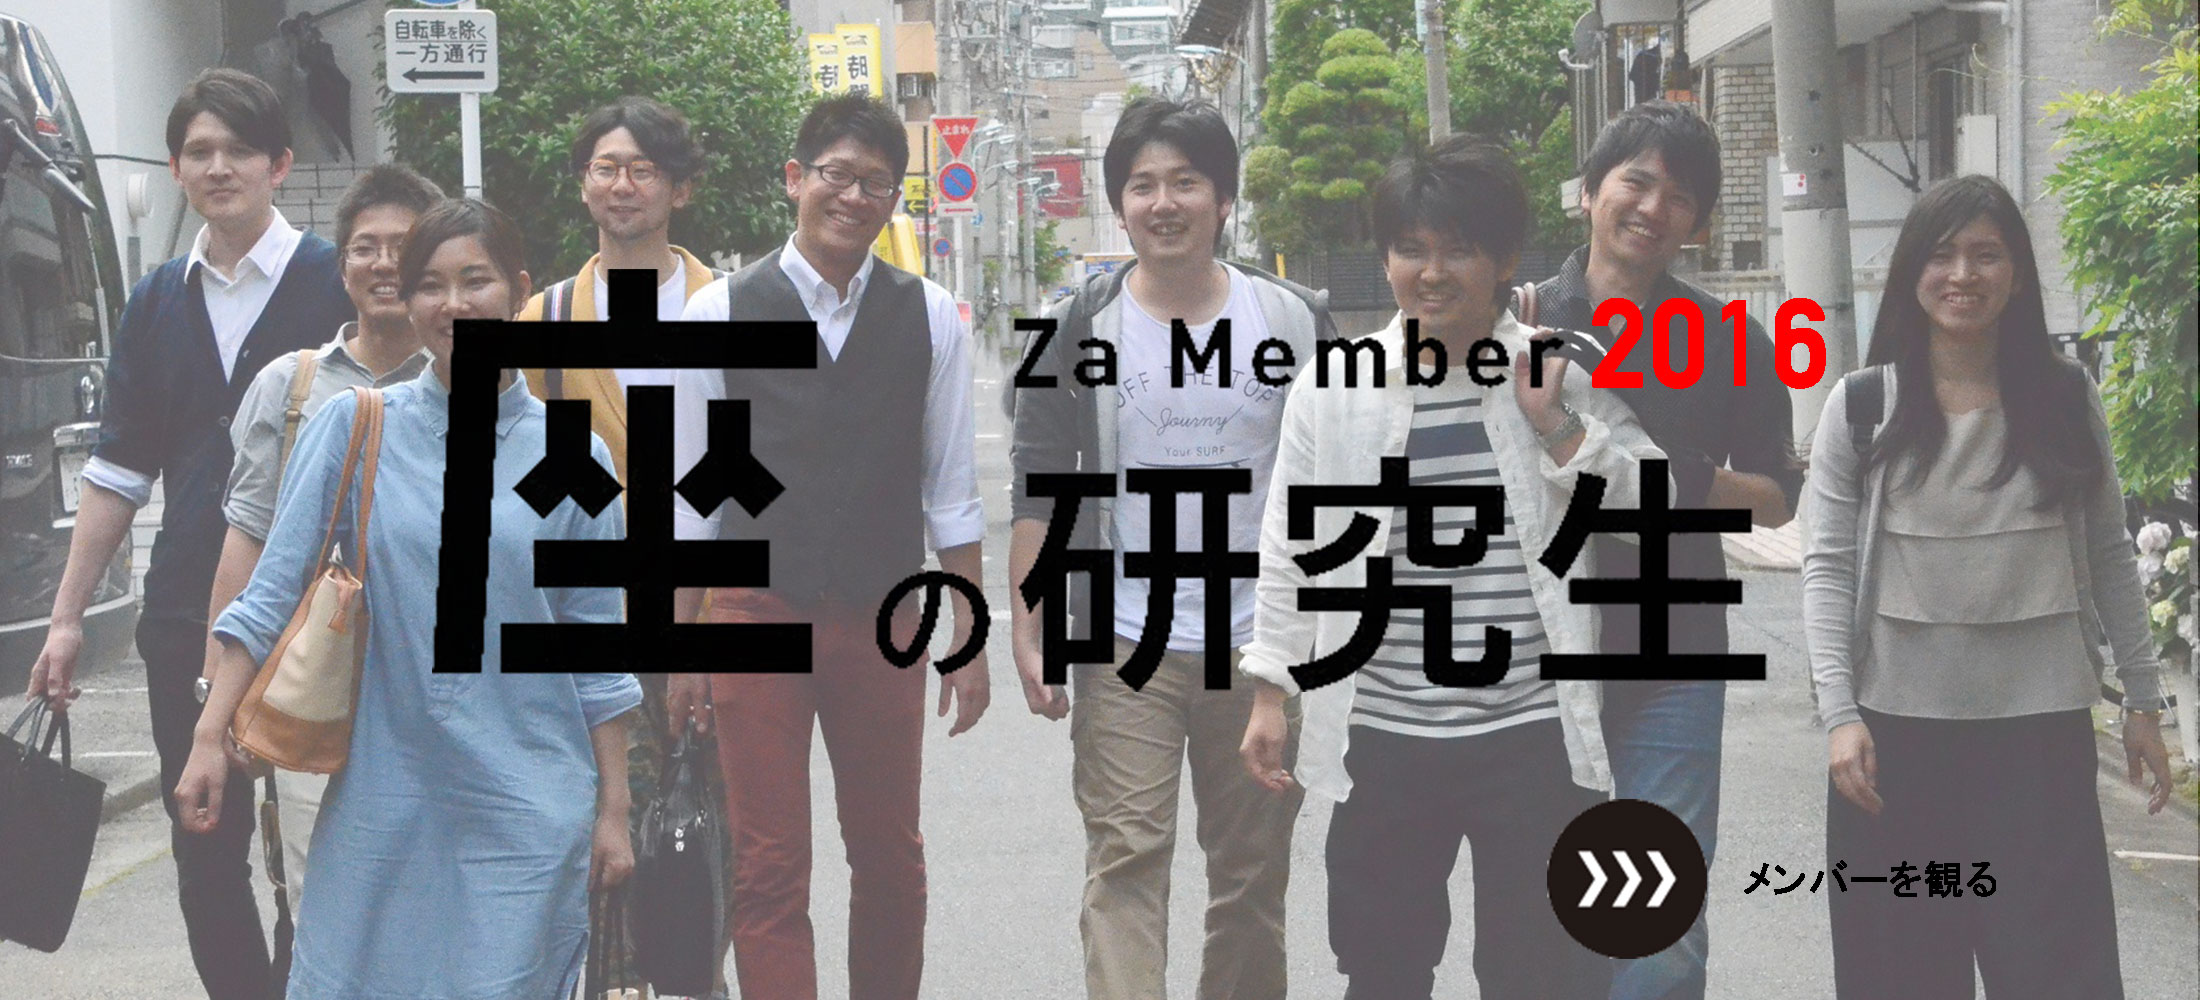 座の研究生 Za Member 2016